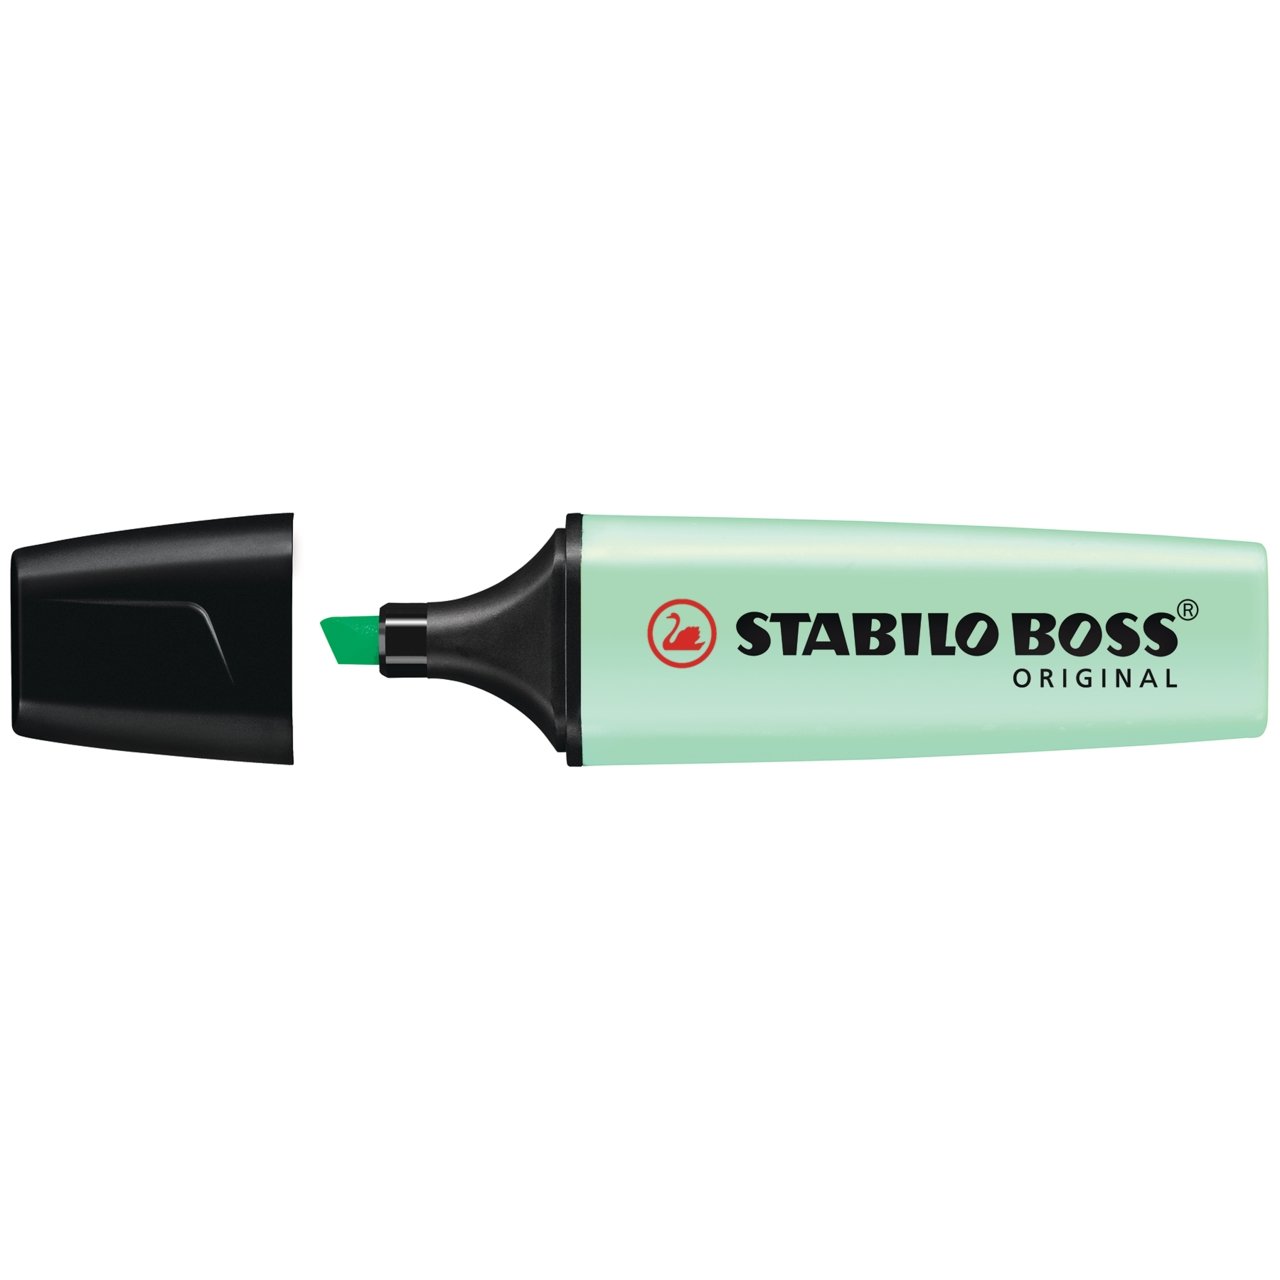 Stabilo BOSS Original Highlighter - Hint of Mint - merriartist.com